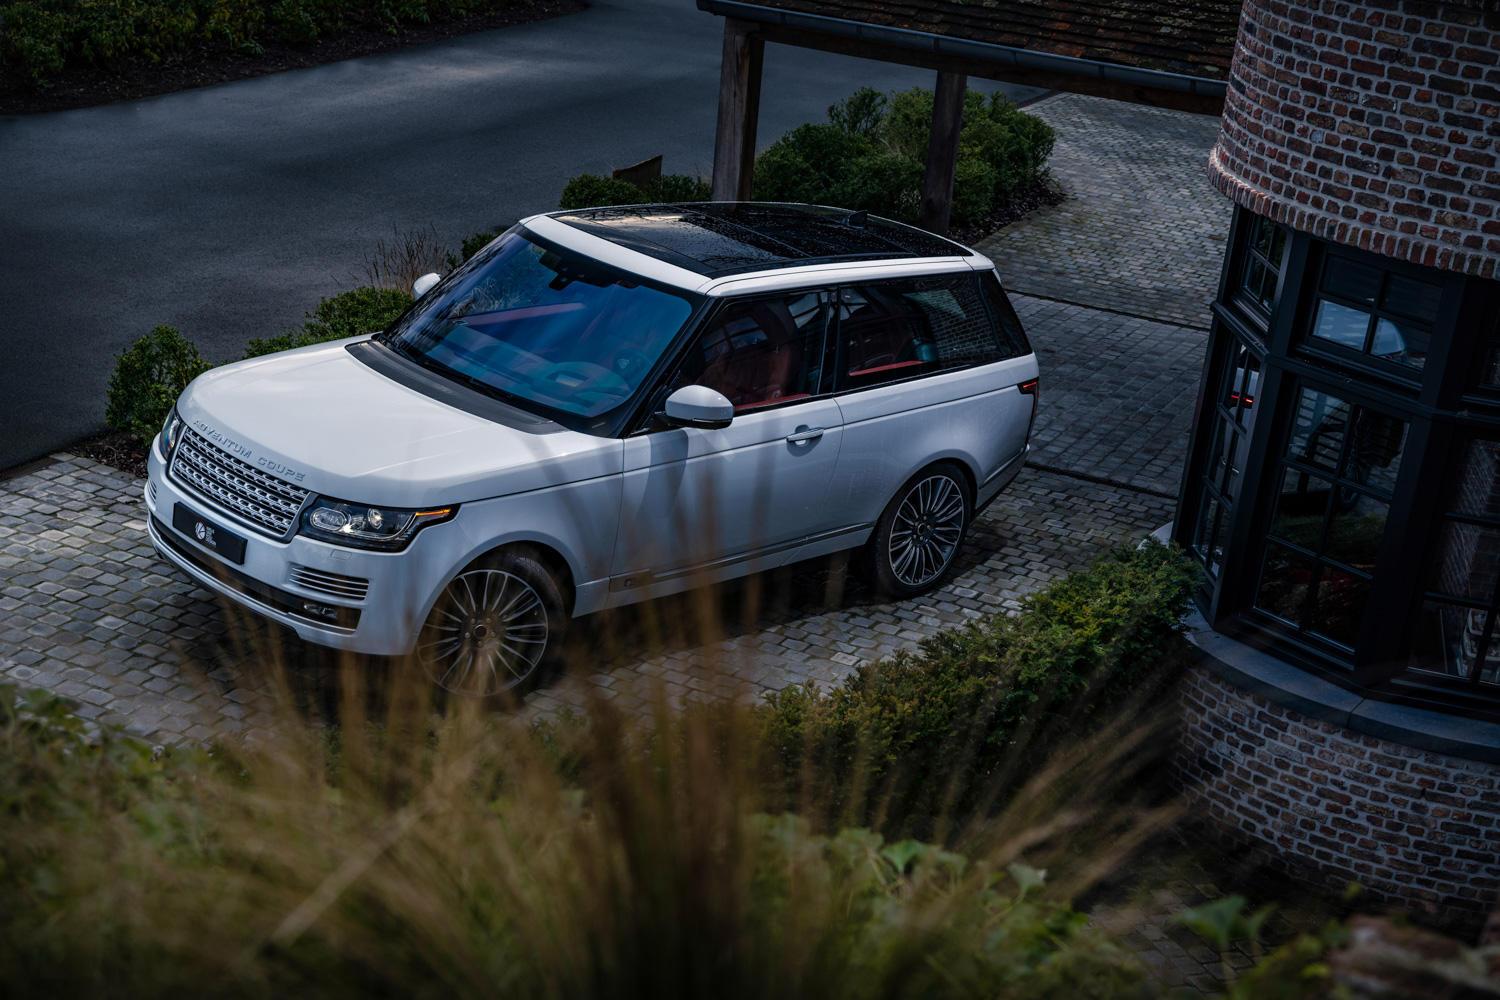 Adventum Coupe is the two-door Range Rover we never got